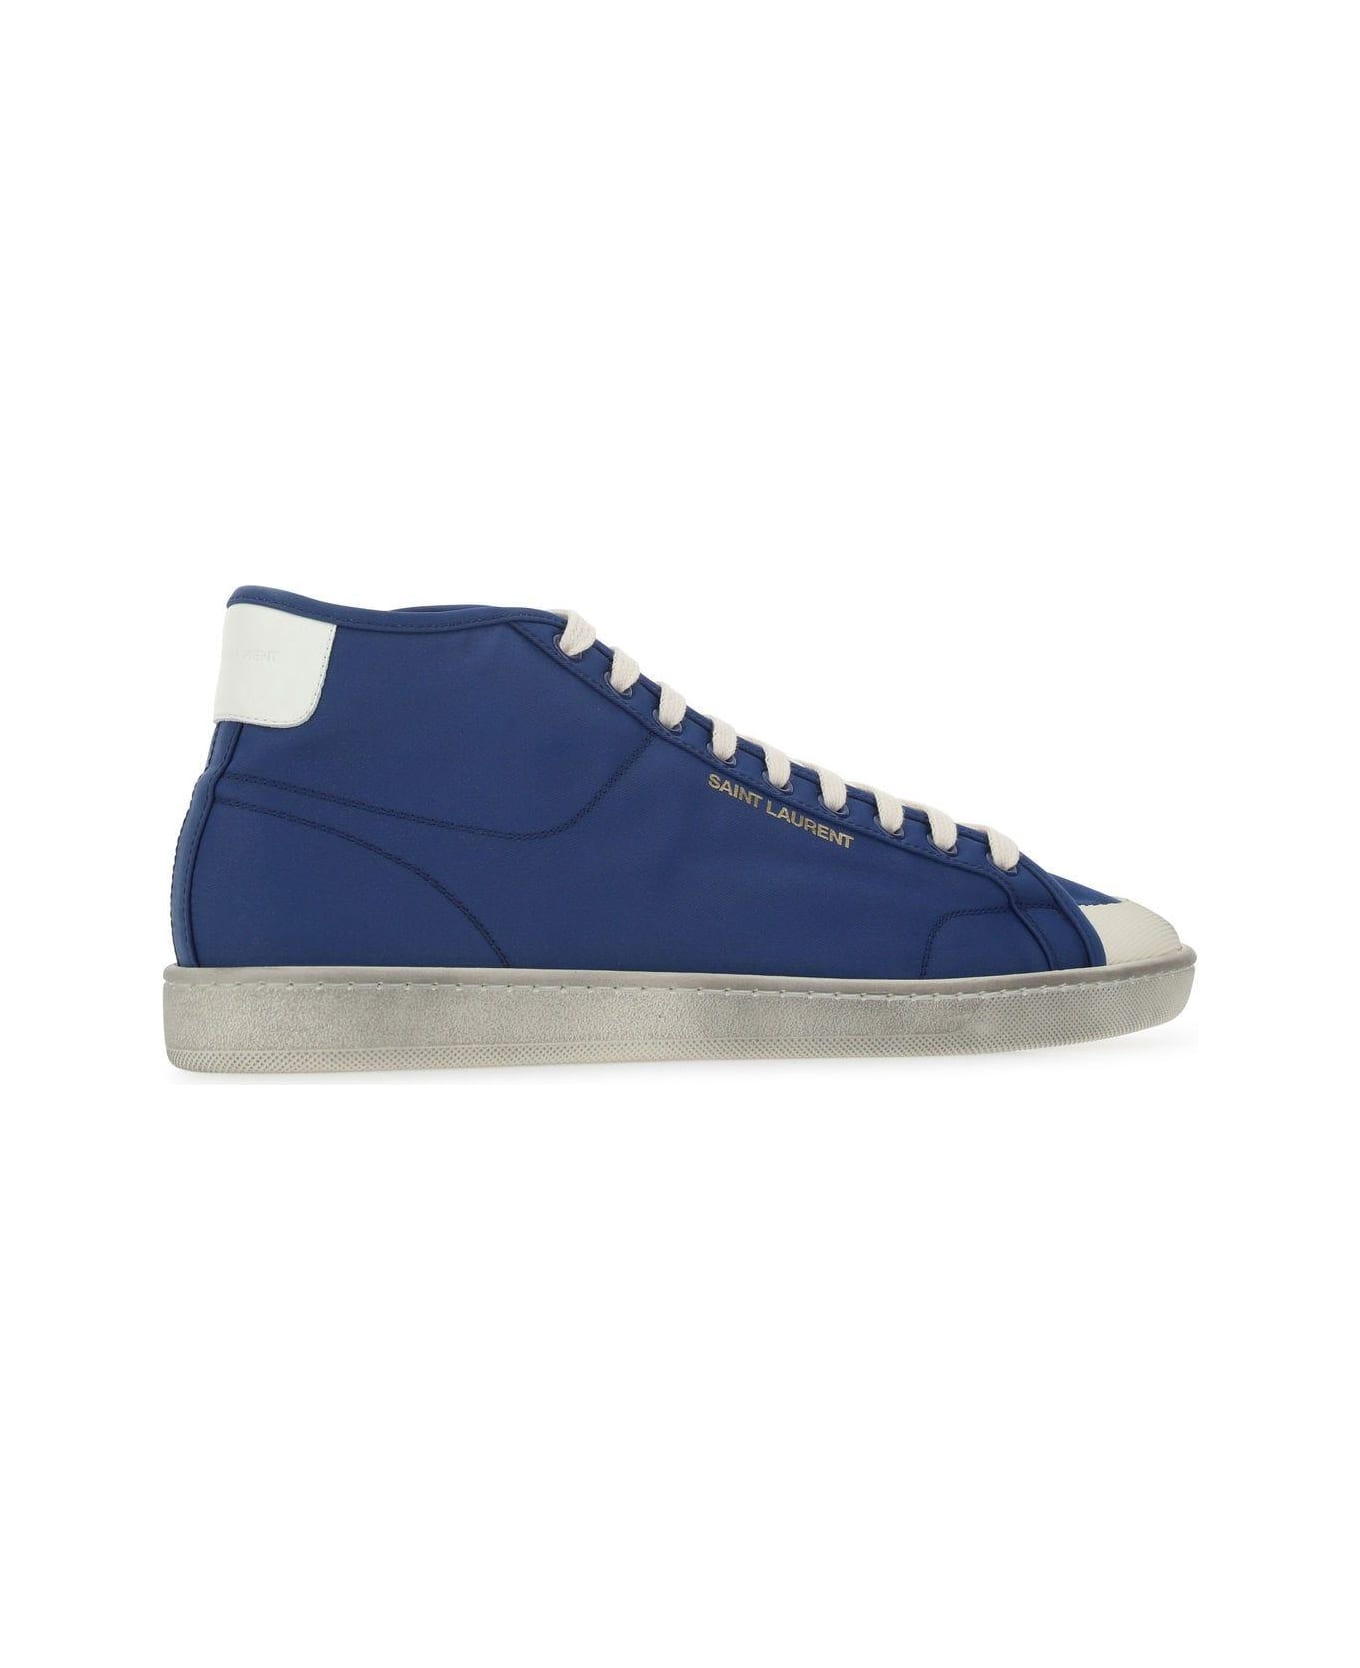 Saint Laurent Blue Nylon Sl/39 Sneakers - Blue